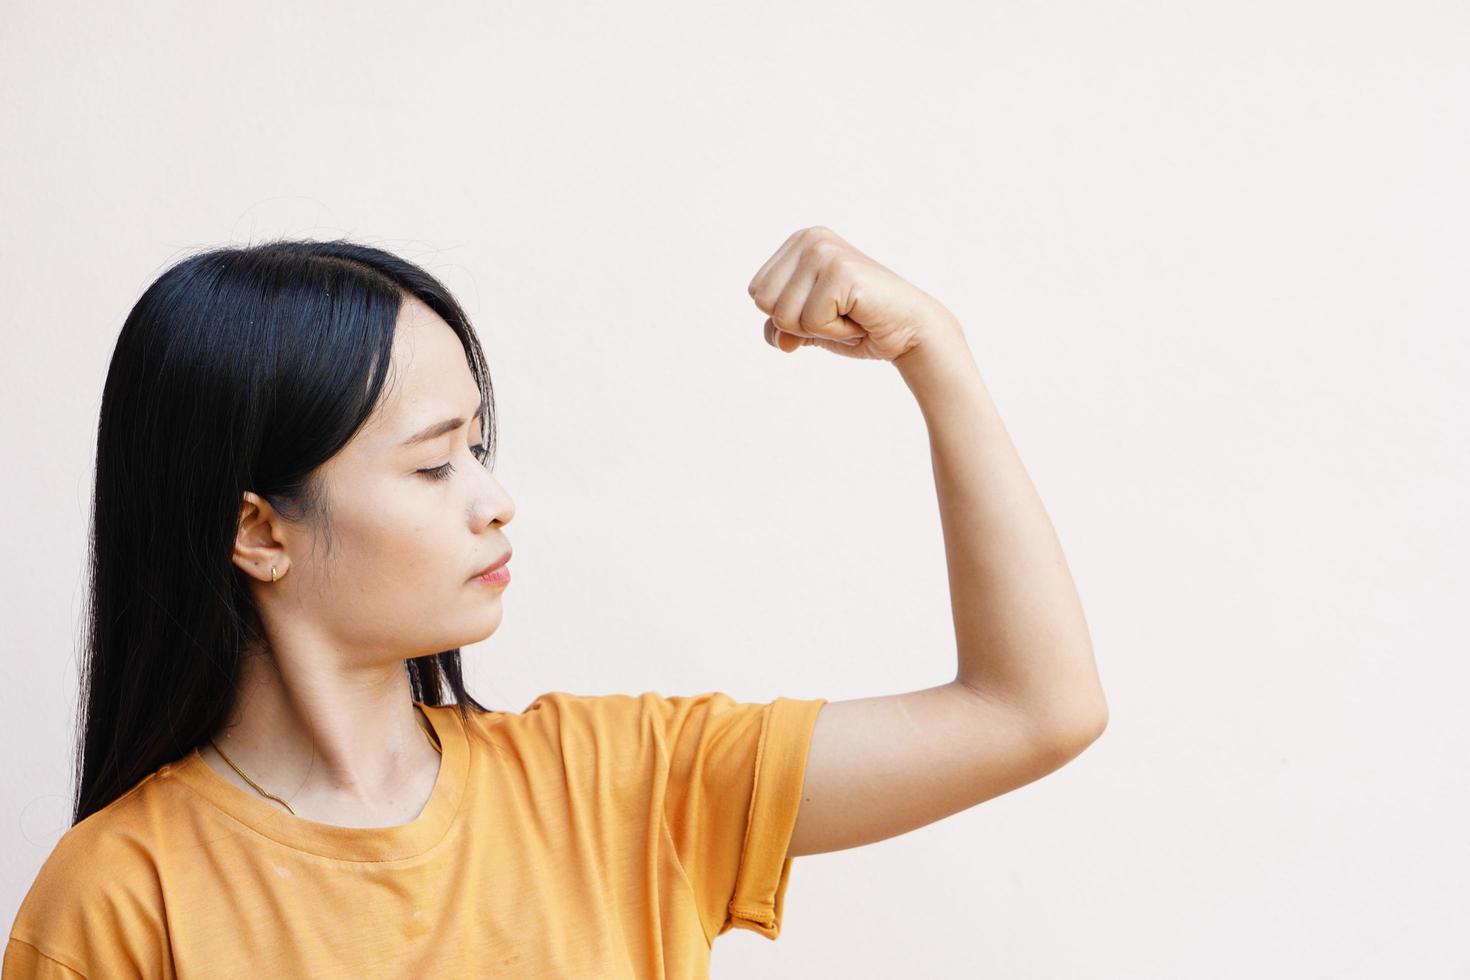 mulheres asiáticas empurrando seus músculos para mostrar sua força. foto